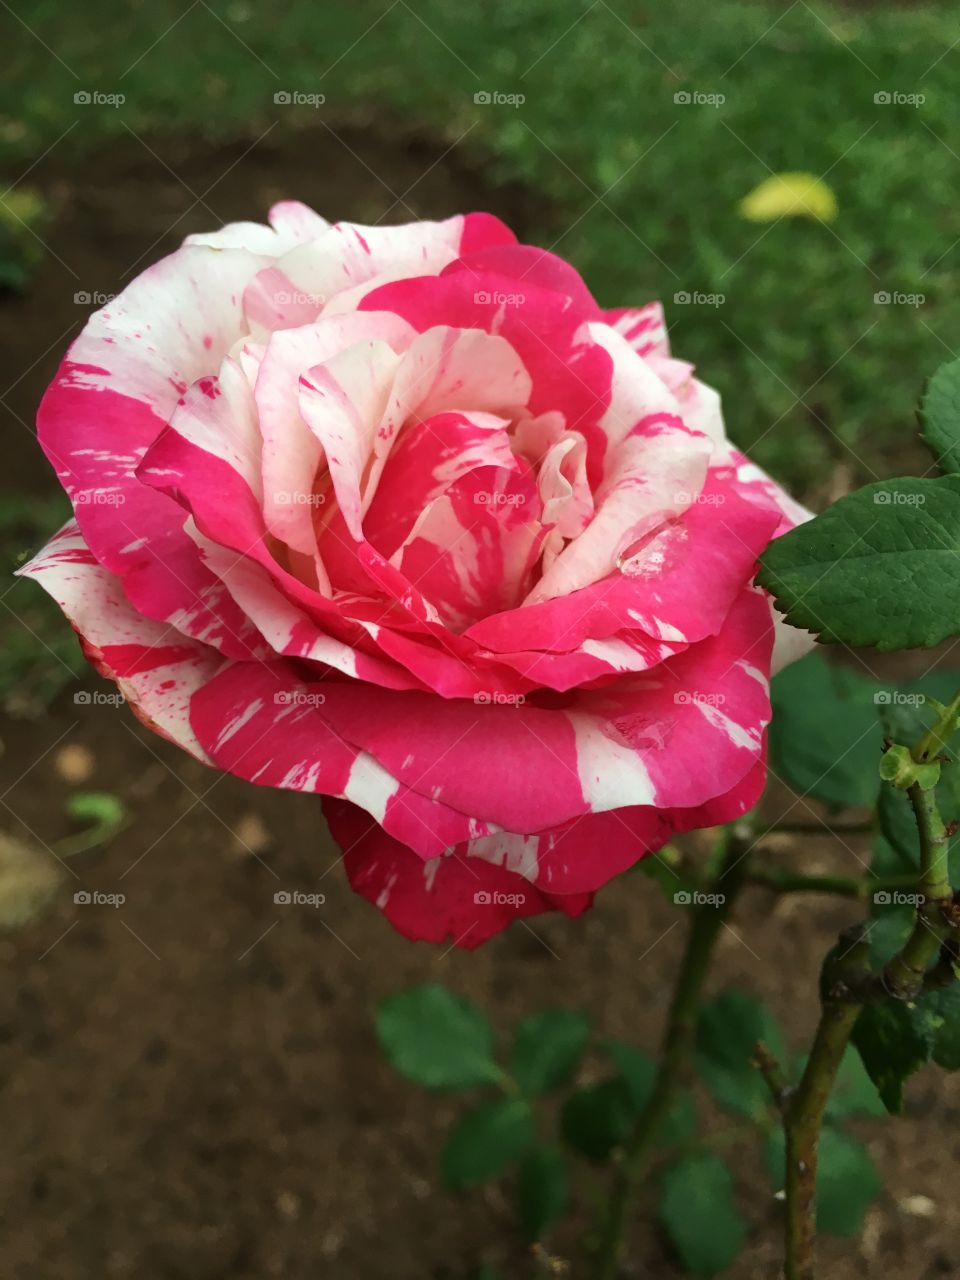 🌺Fim de #cooper!
Suado, cansado e feliz, alongando e curtindo a beleza das #flores.
Essa é a nossa #roseira mesclada. Ímpar nas suas cores diversas, sem filtros!